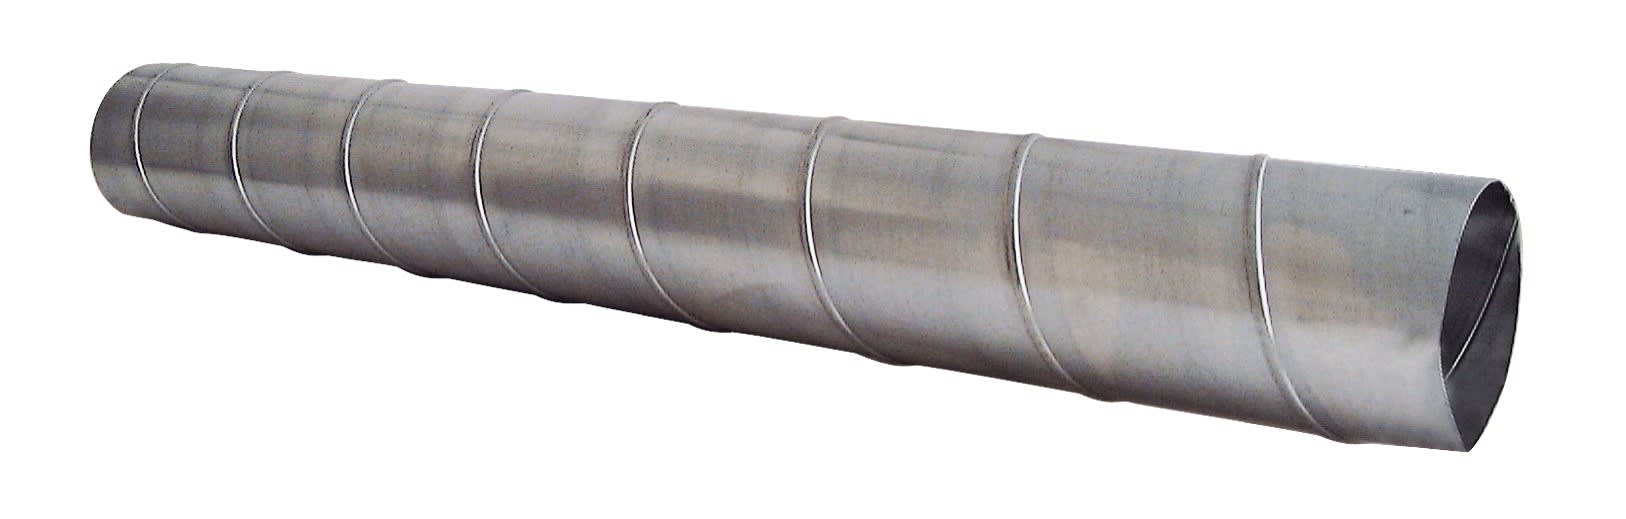 S&P - Conduit spiralé acier galvanisé, D 125 mm, longueur 3 m